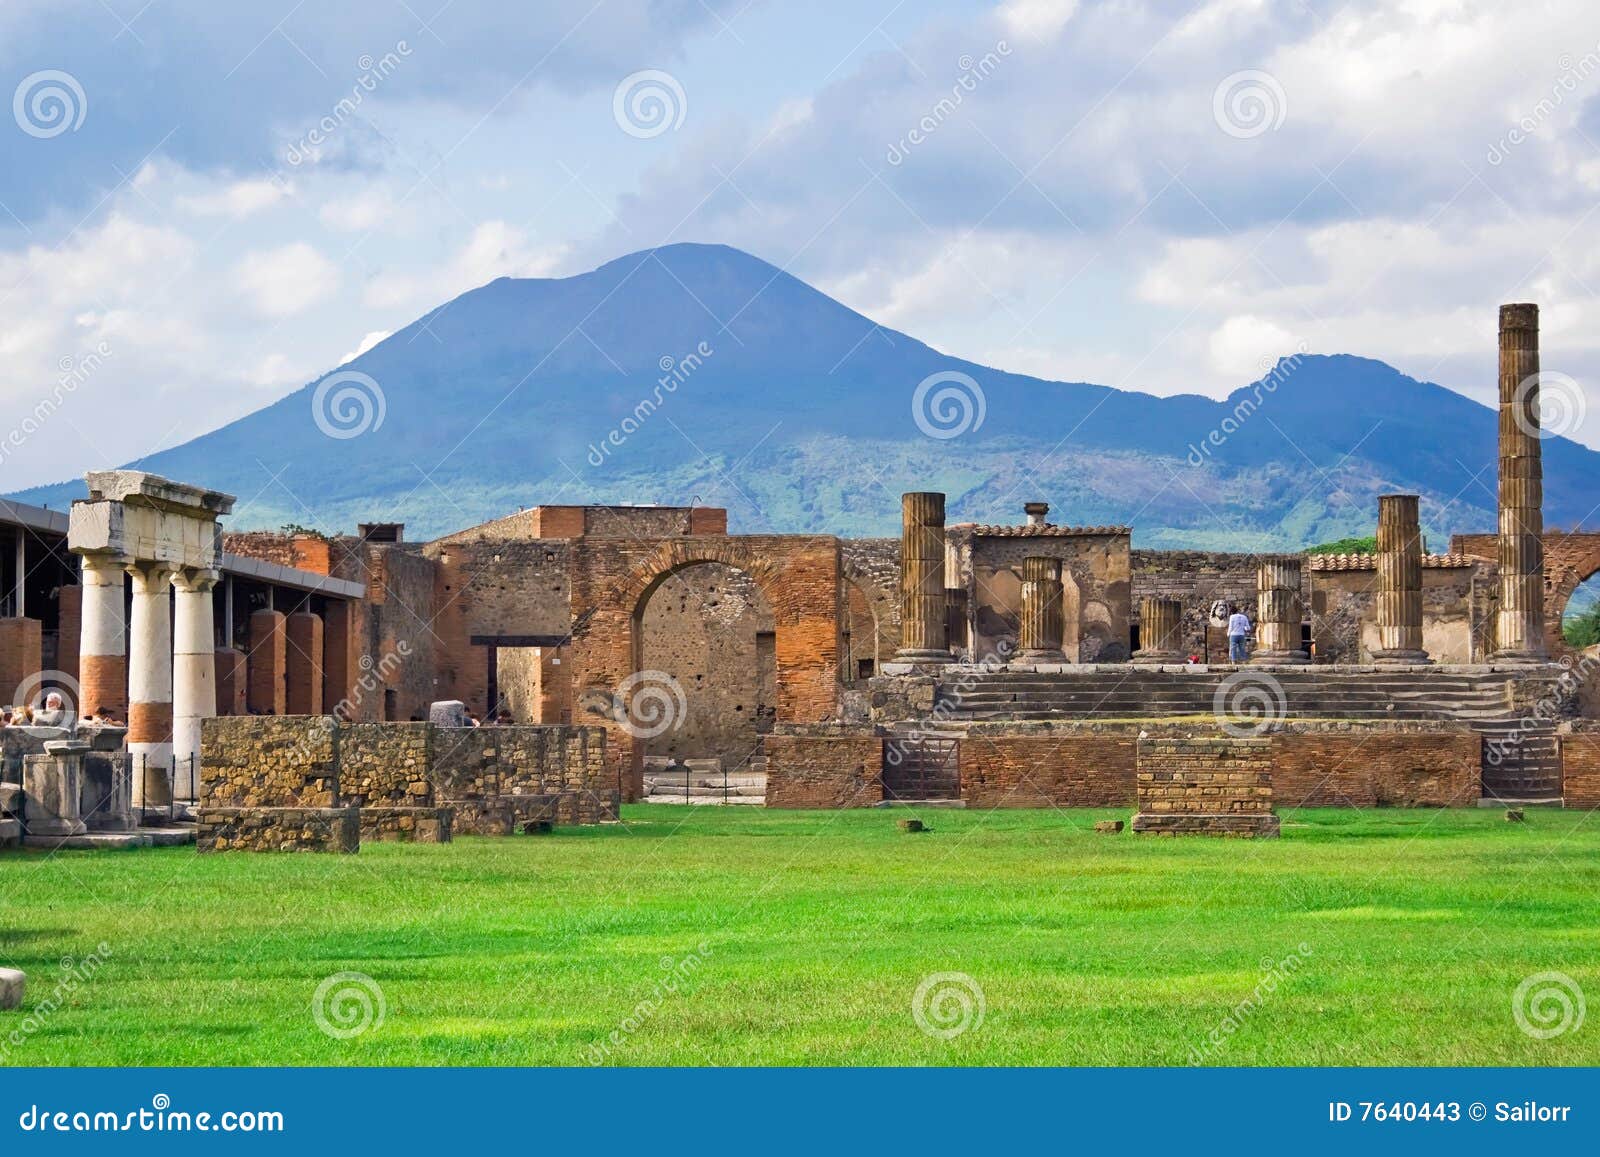 vesuvius and pompeii